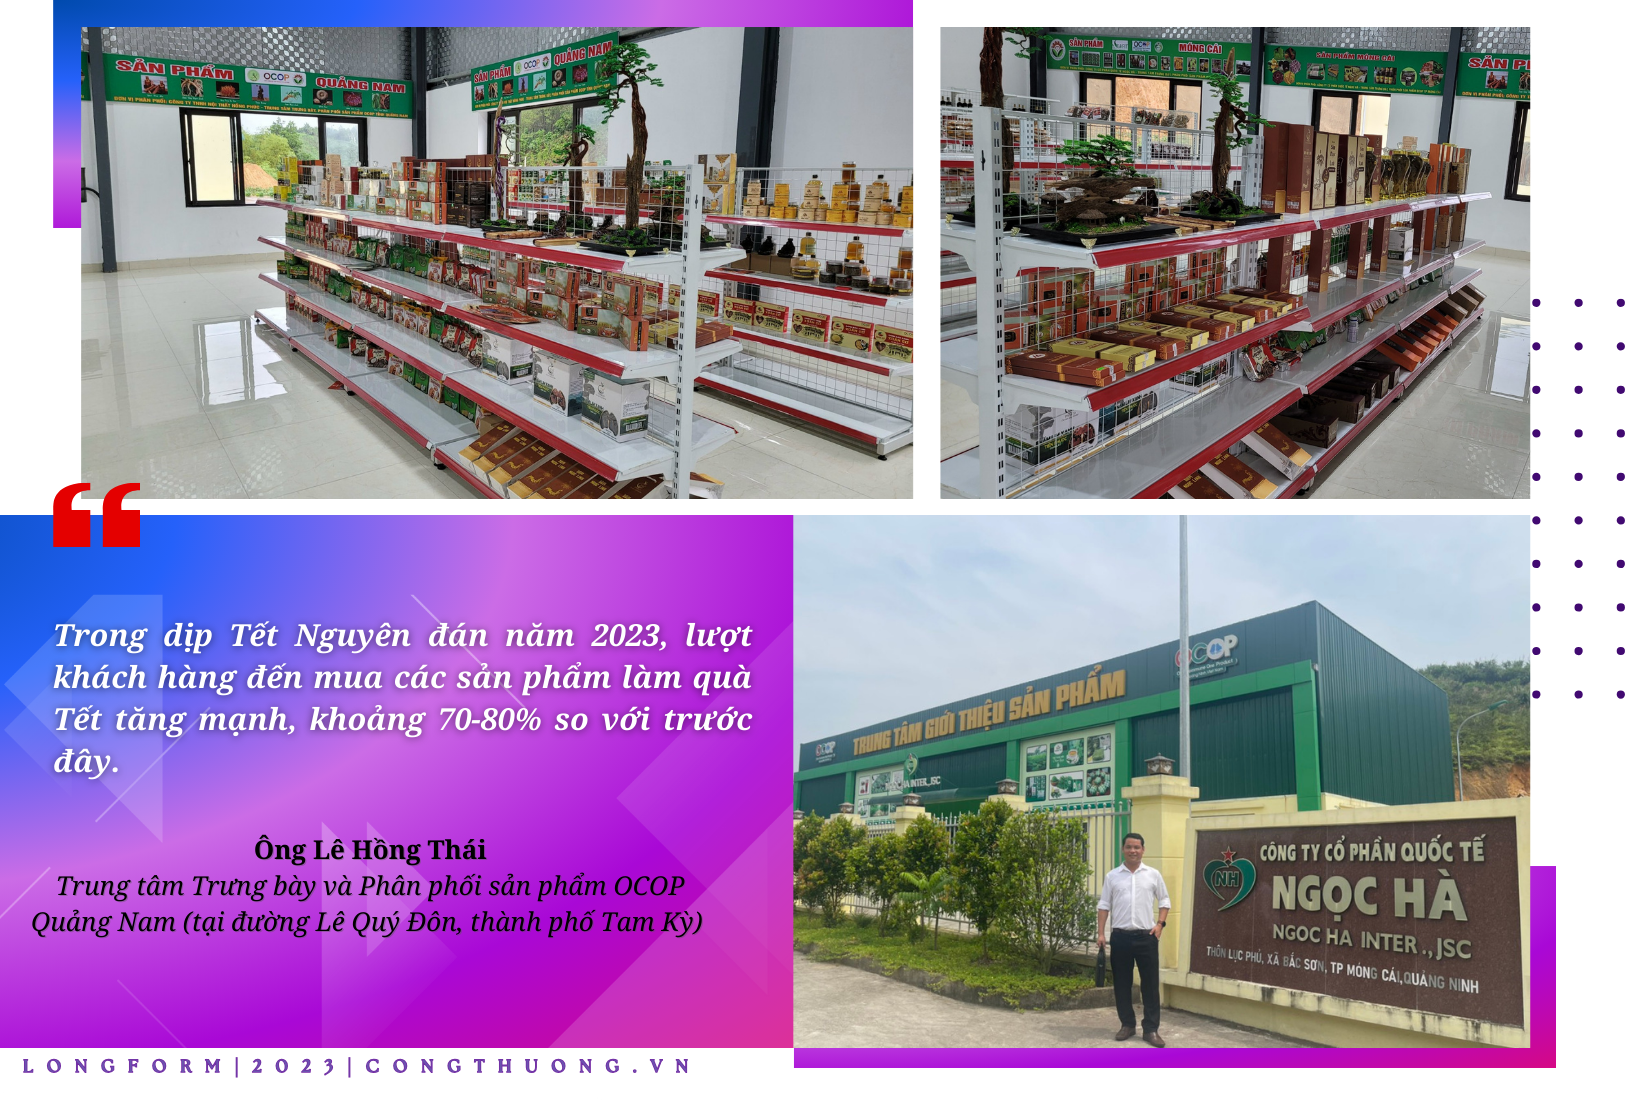 Longform | Quảng Nam: Hiệu quả từ điểm giới thiệu, bán hàng OCOP